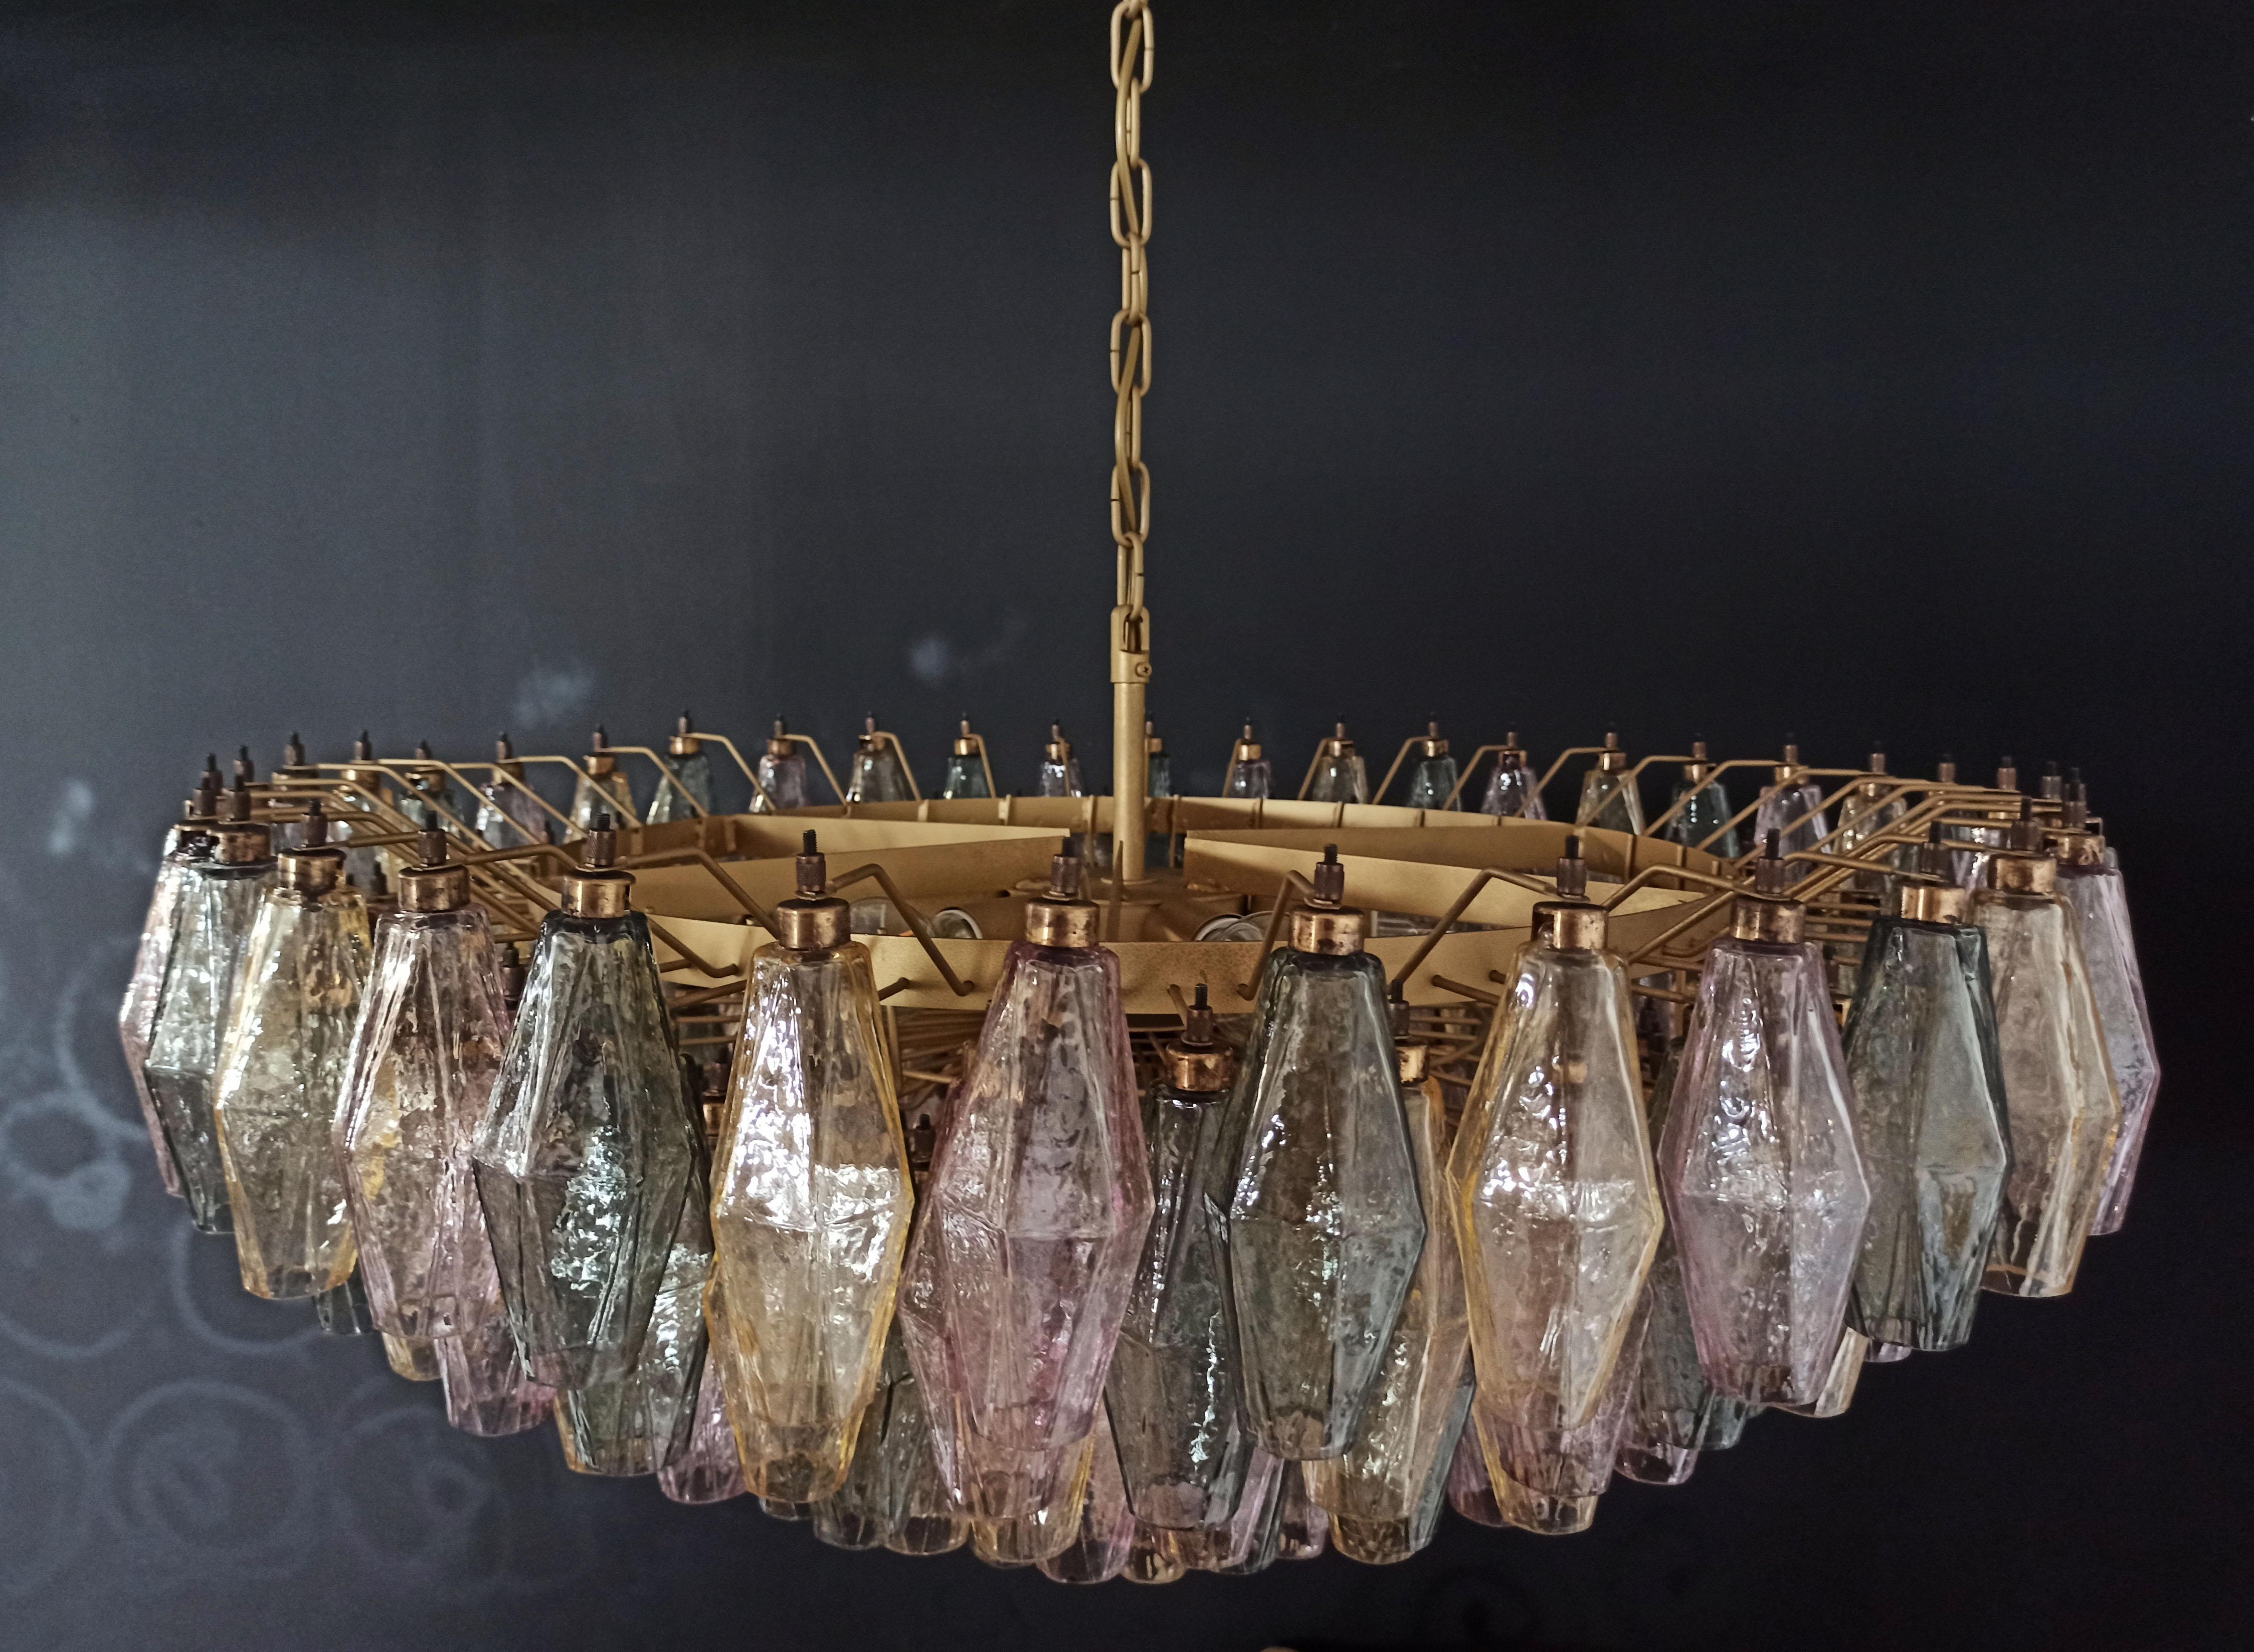 Incroyable candelier en verre de Murano - 185 verres multicolores 6